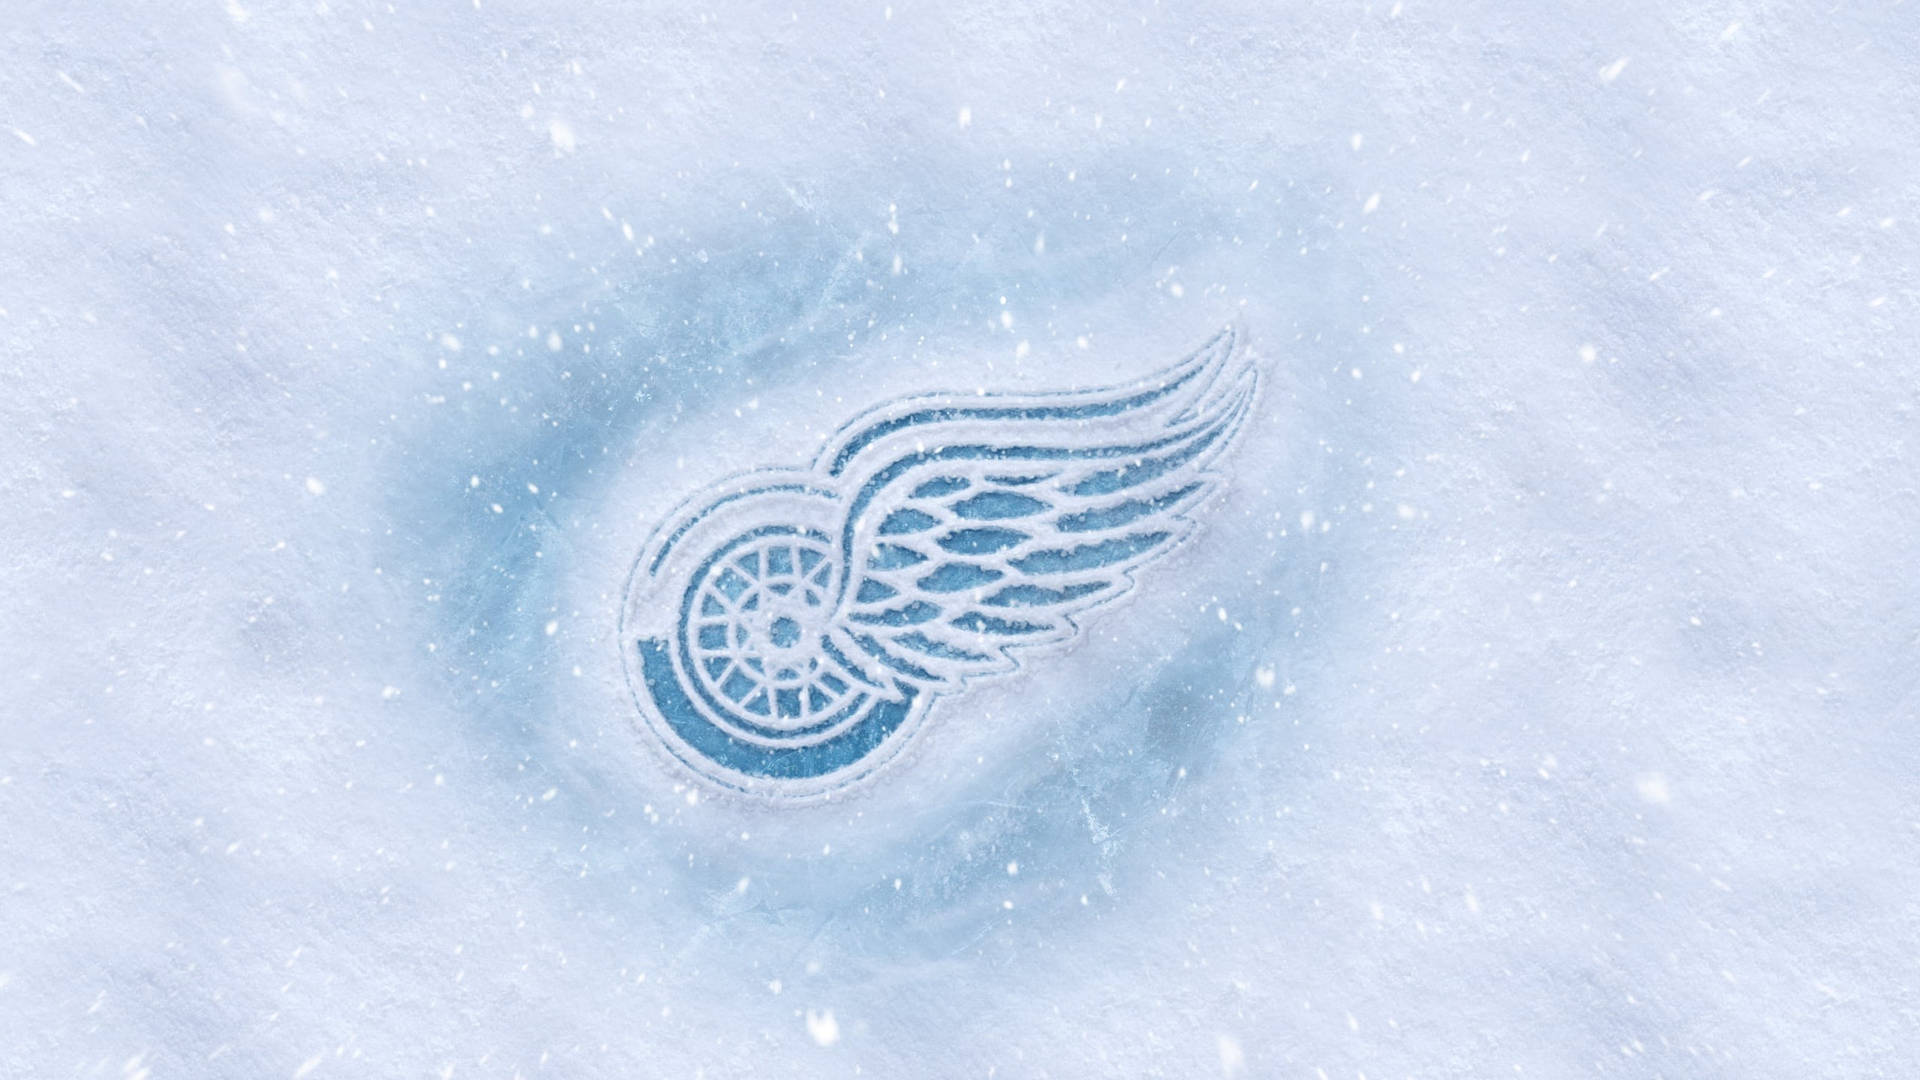 Impresiónen Nieve Del Logo De Los Detroit Red Wings. Fondo de pantalla